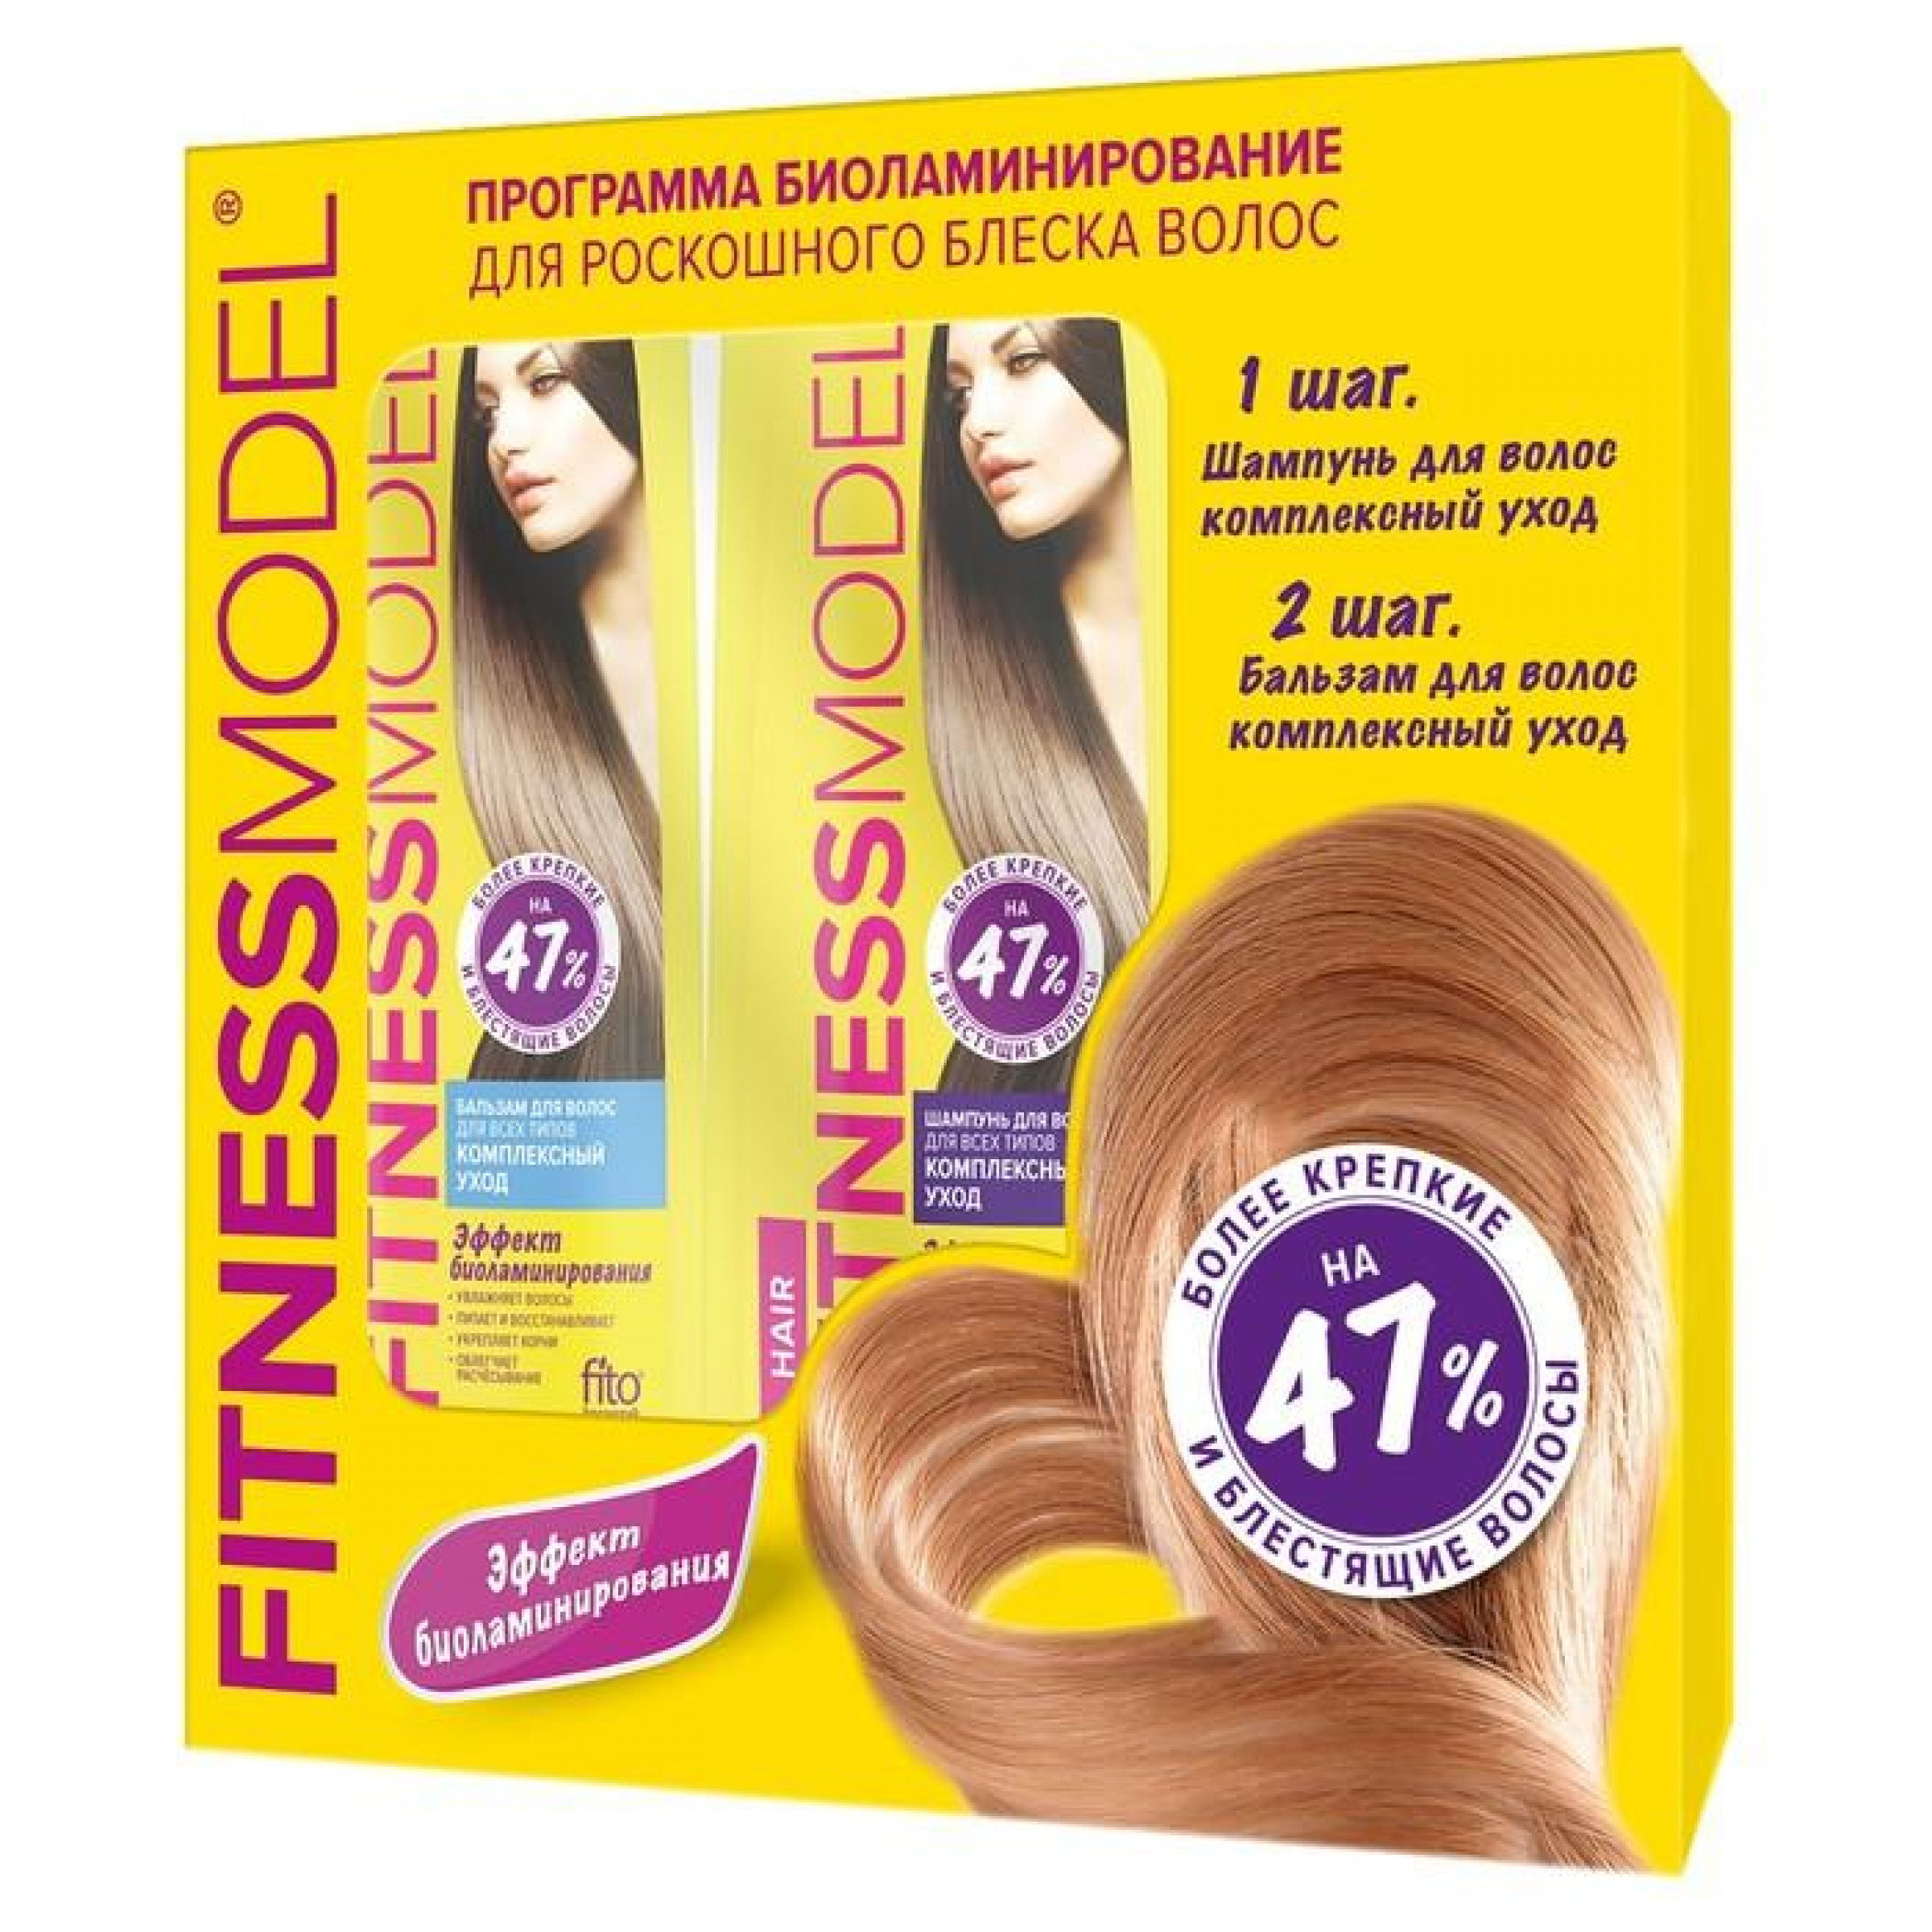 Набор подарочный ФИТОкосметик Fitness Mode Программа биоламинирования роскошного блеска волос, шампунь 200мл и бальзам 200мл